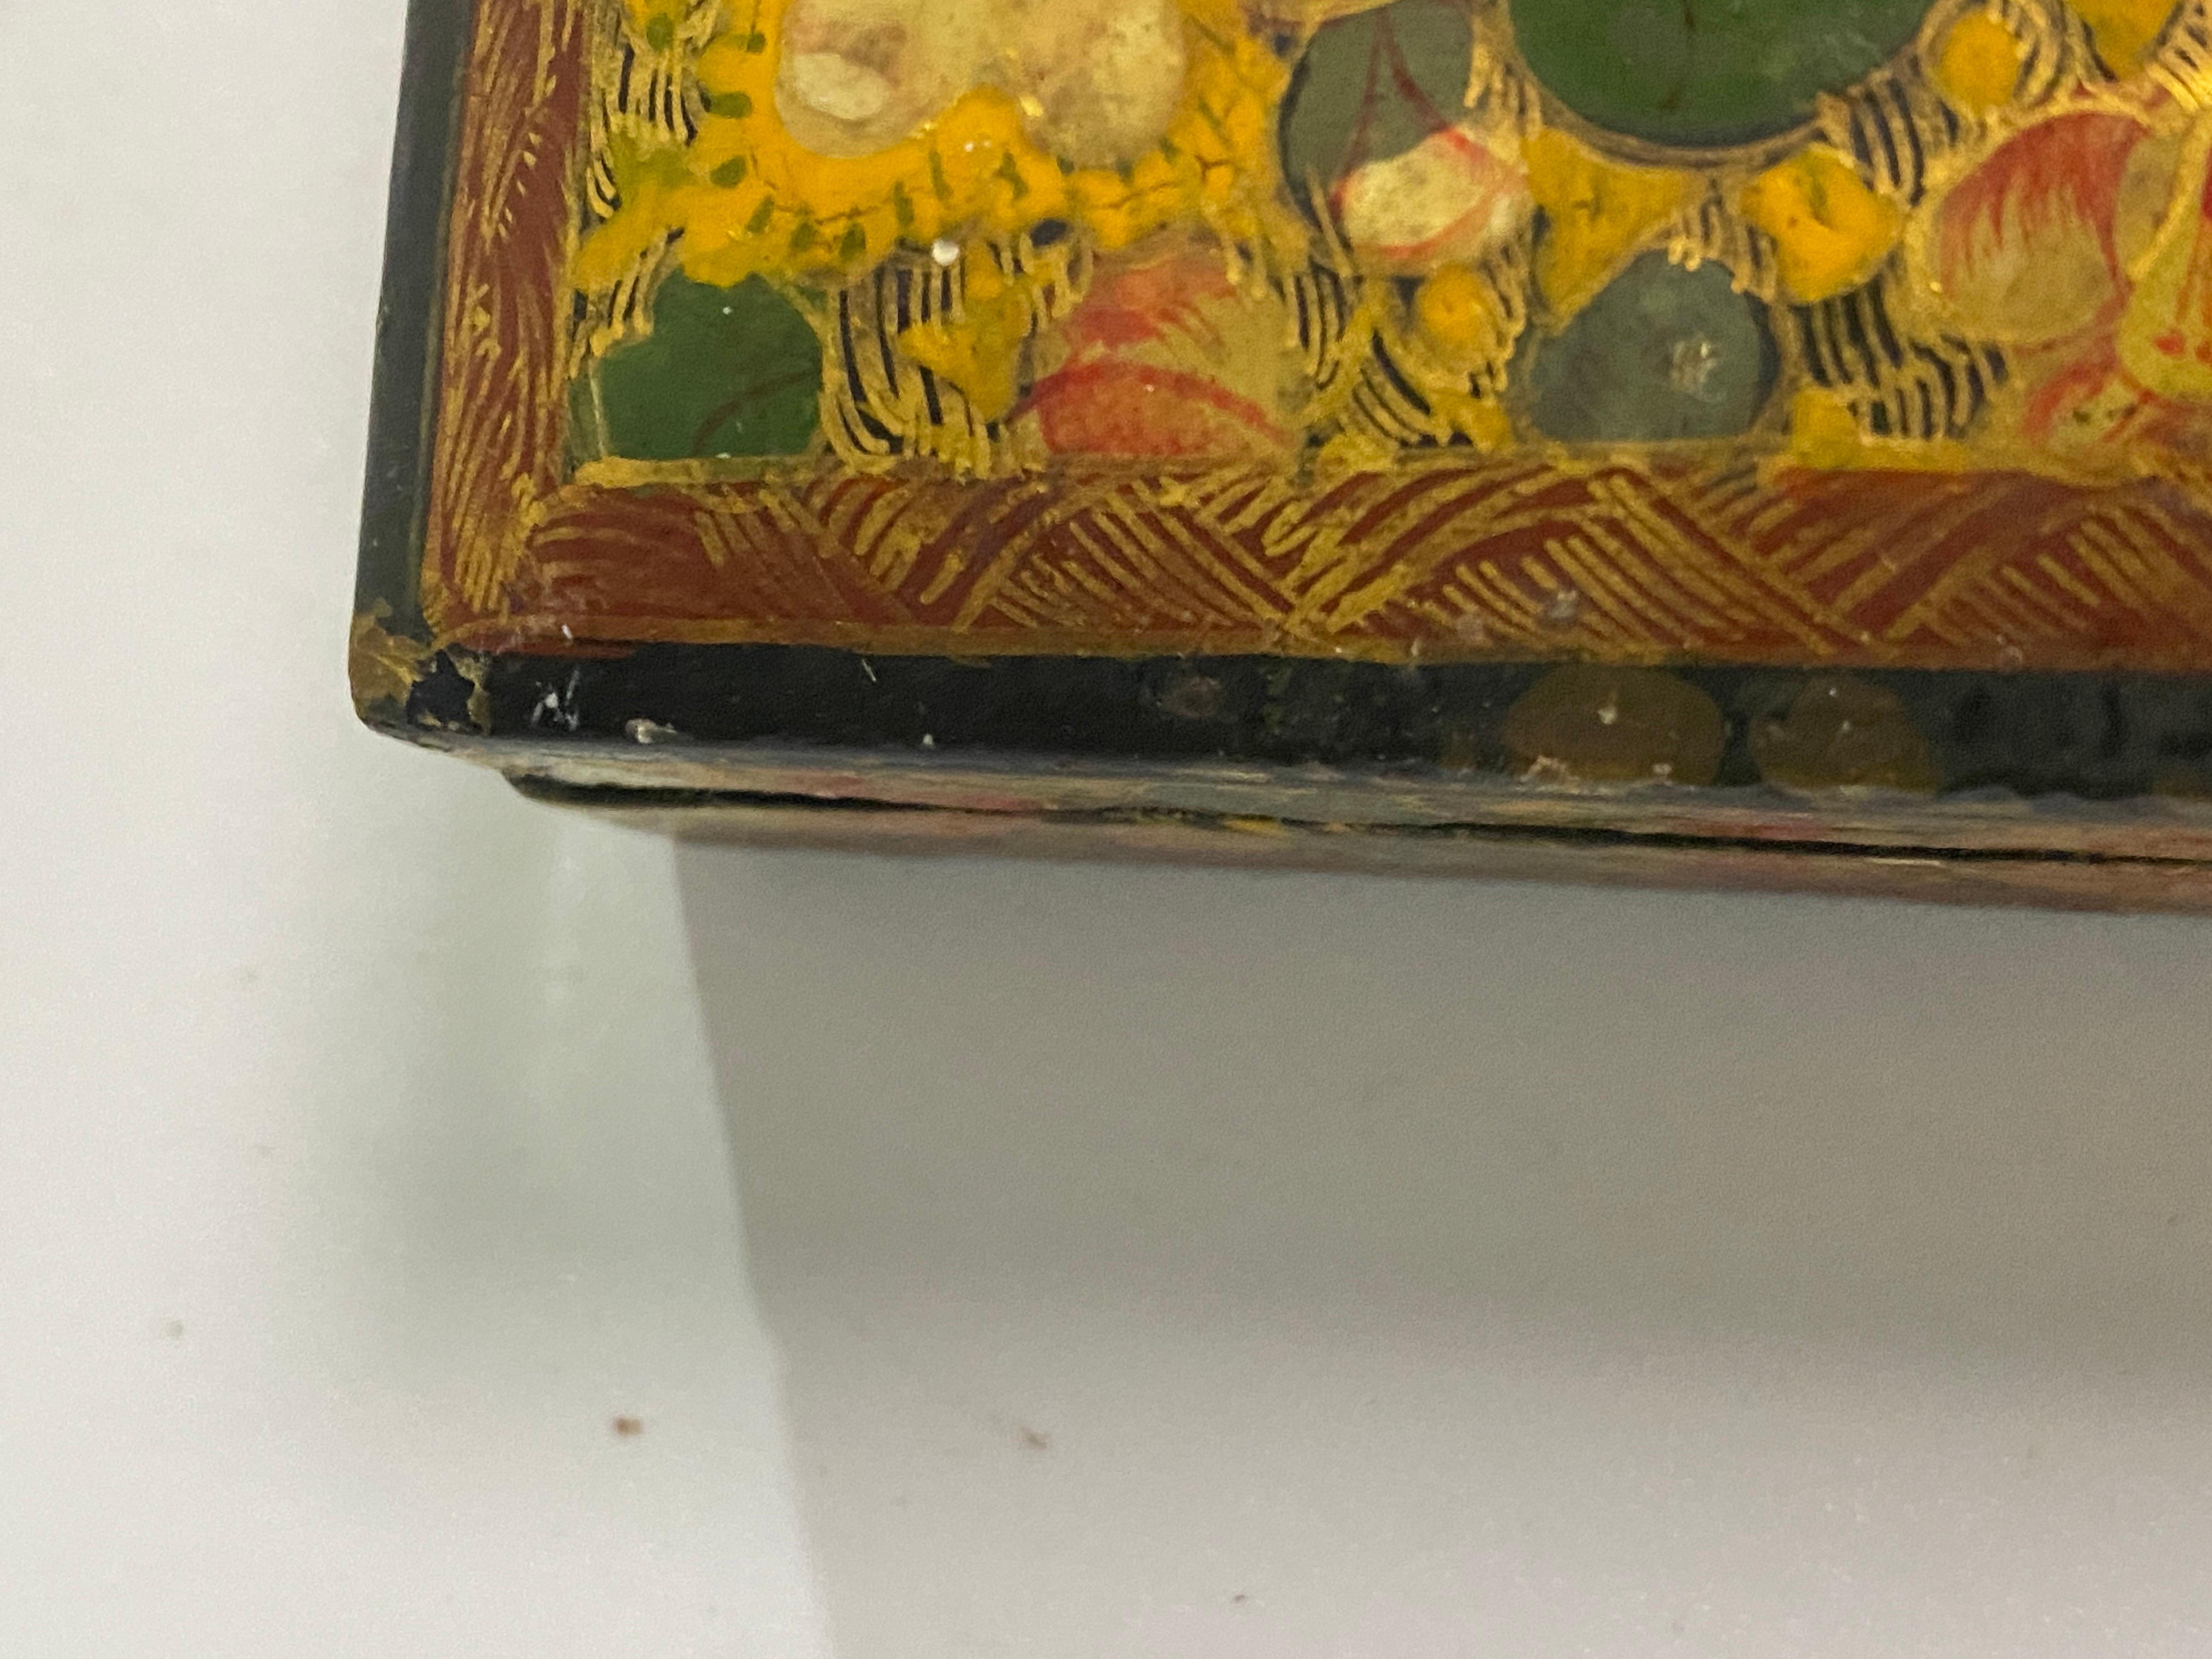 Kleine lackierte Dose mit Blumendekor in Gelb, Rot und Grün, die im 19. Jahrhundert in China hergestellt wurde.